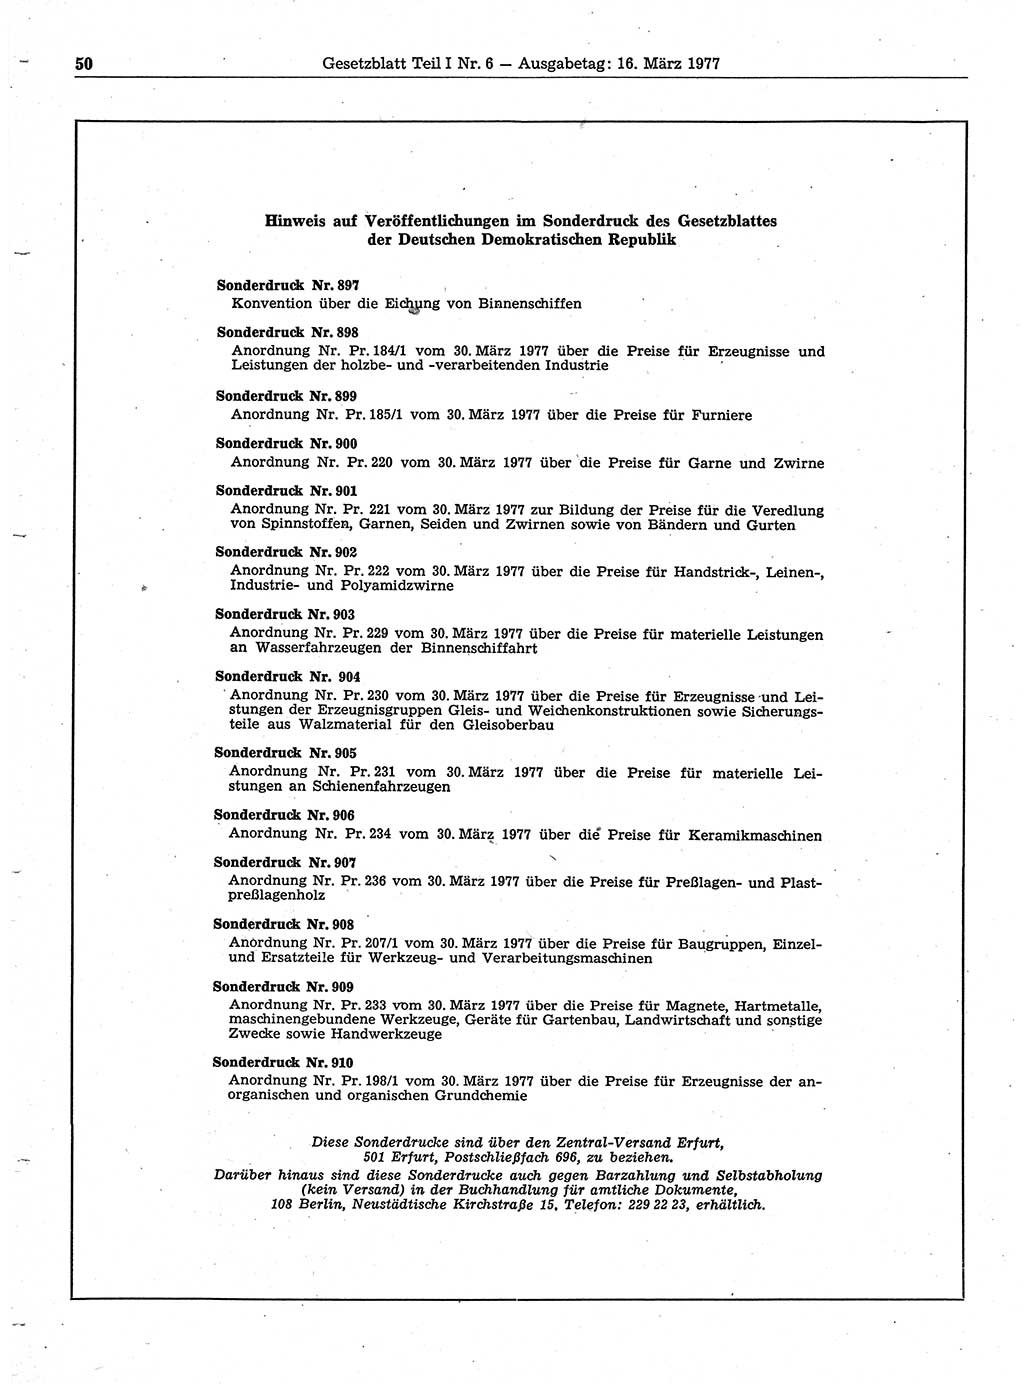 Gesetzblatt (GBl.) der Deutschen Demokratischen Republik (DDR) Teil Ⅰ 1977, Seite 50 (GBl. DDR Ⅰ 1977, S. 50)